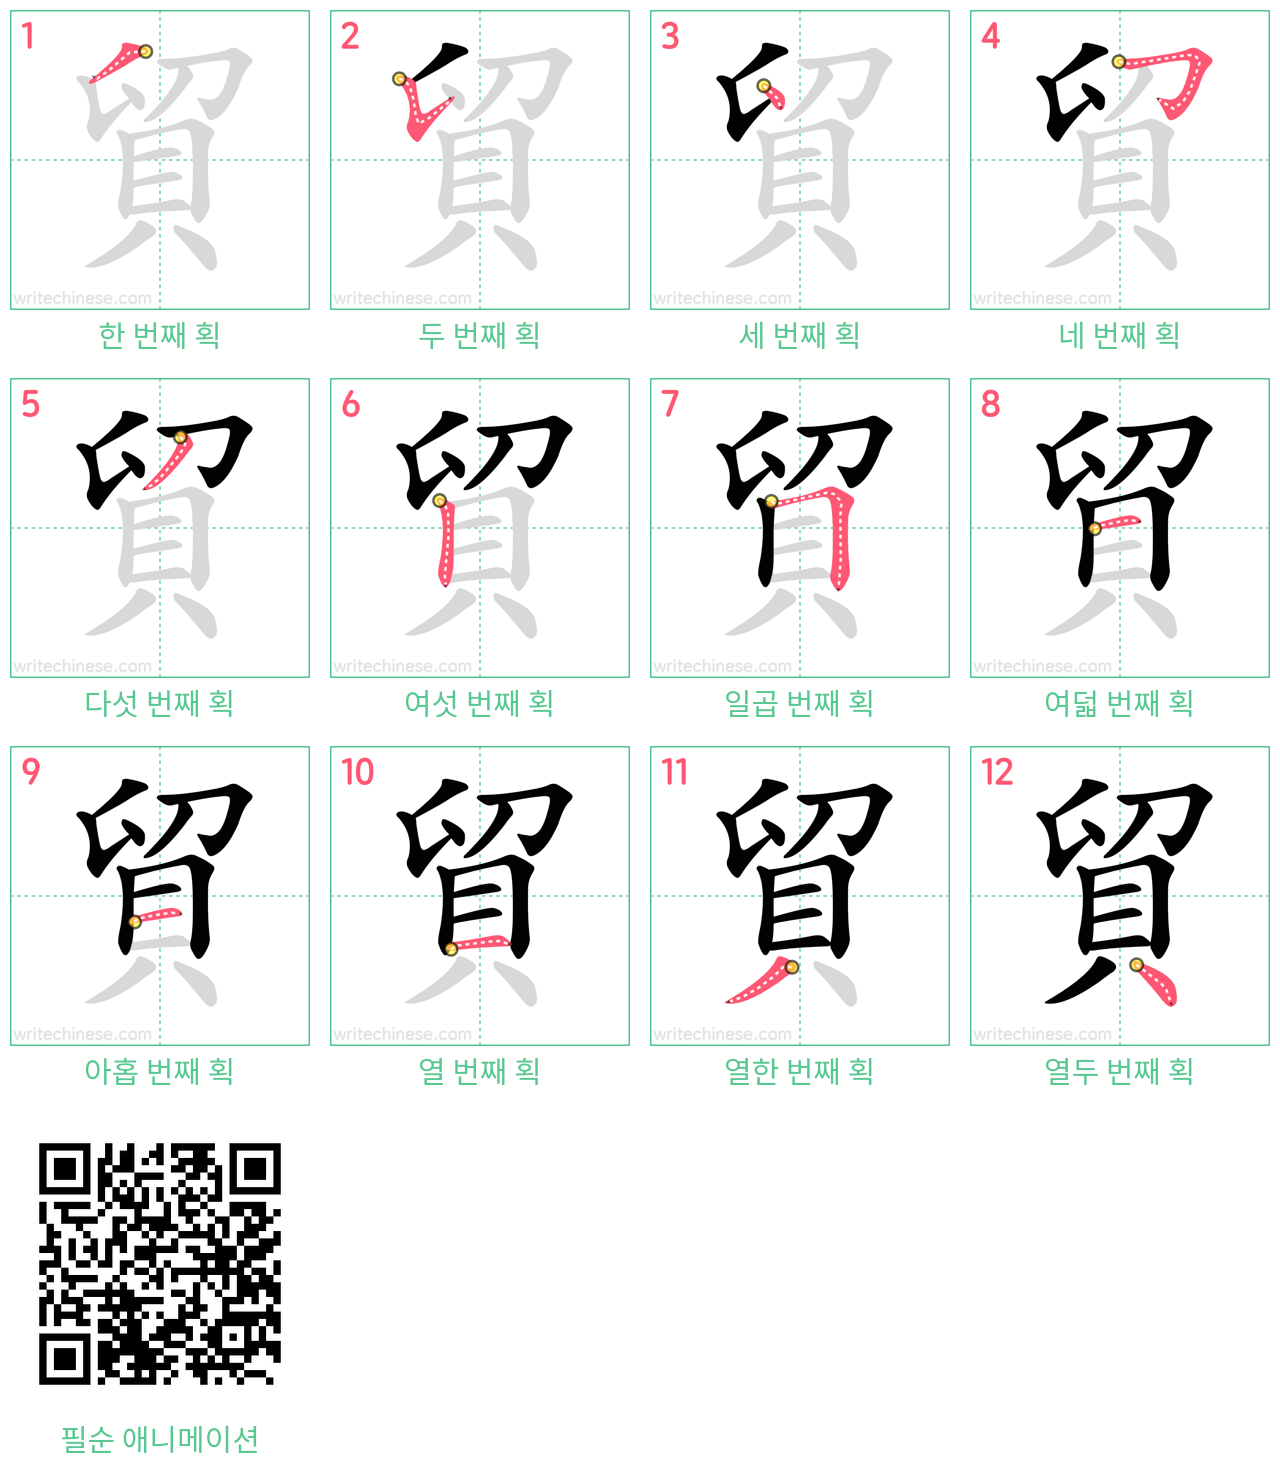 貿 step-by-step stroke order diagrams